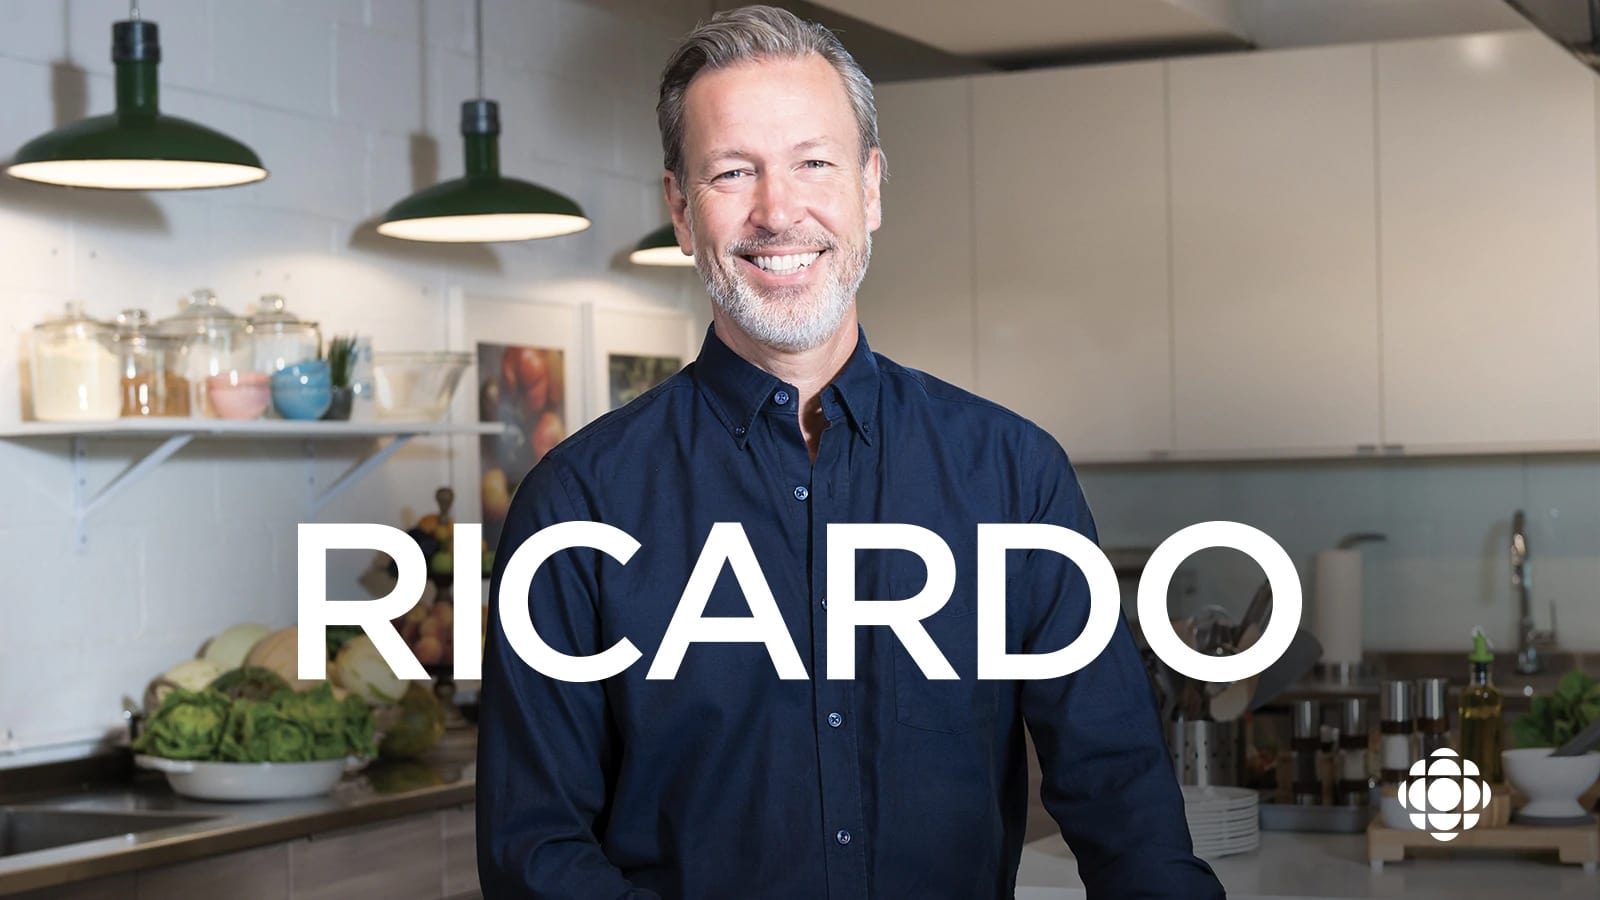 Ricardo - Season 19 Episode 5 : Episode 5